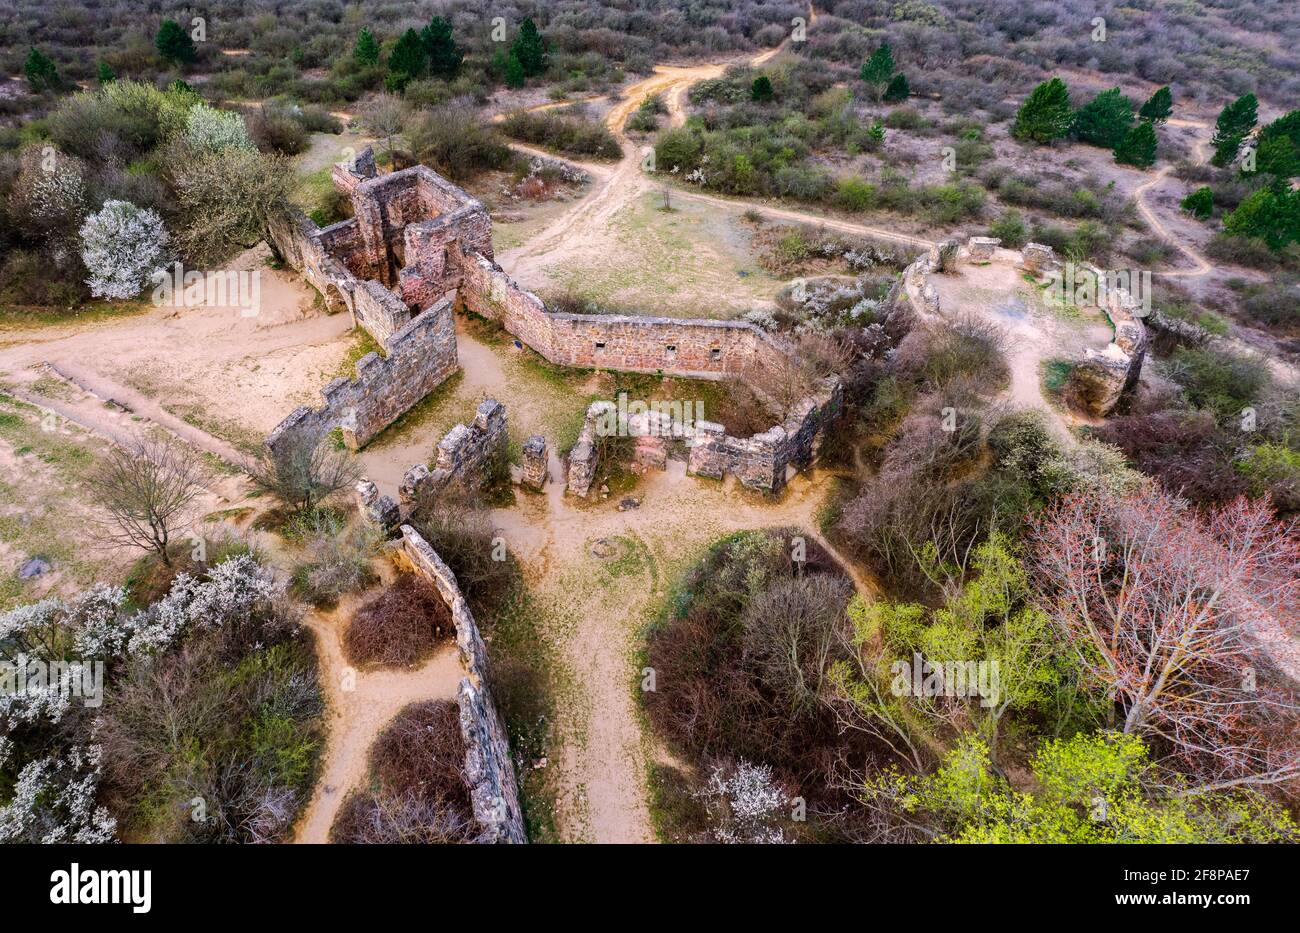 Ces ruines sont la copie du château d'Eger. Conçu pour le tournage du film historique hongrois. Le film est la siegle du château d'Eger. Banque D'Images